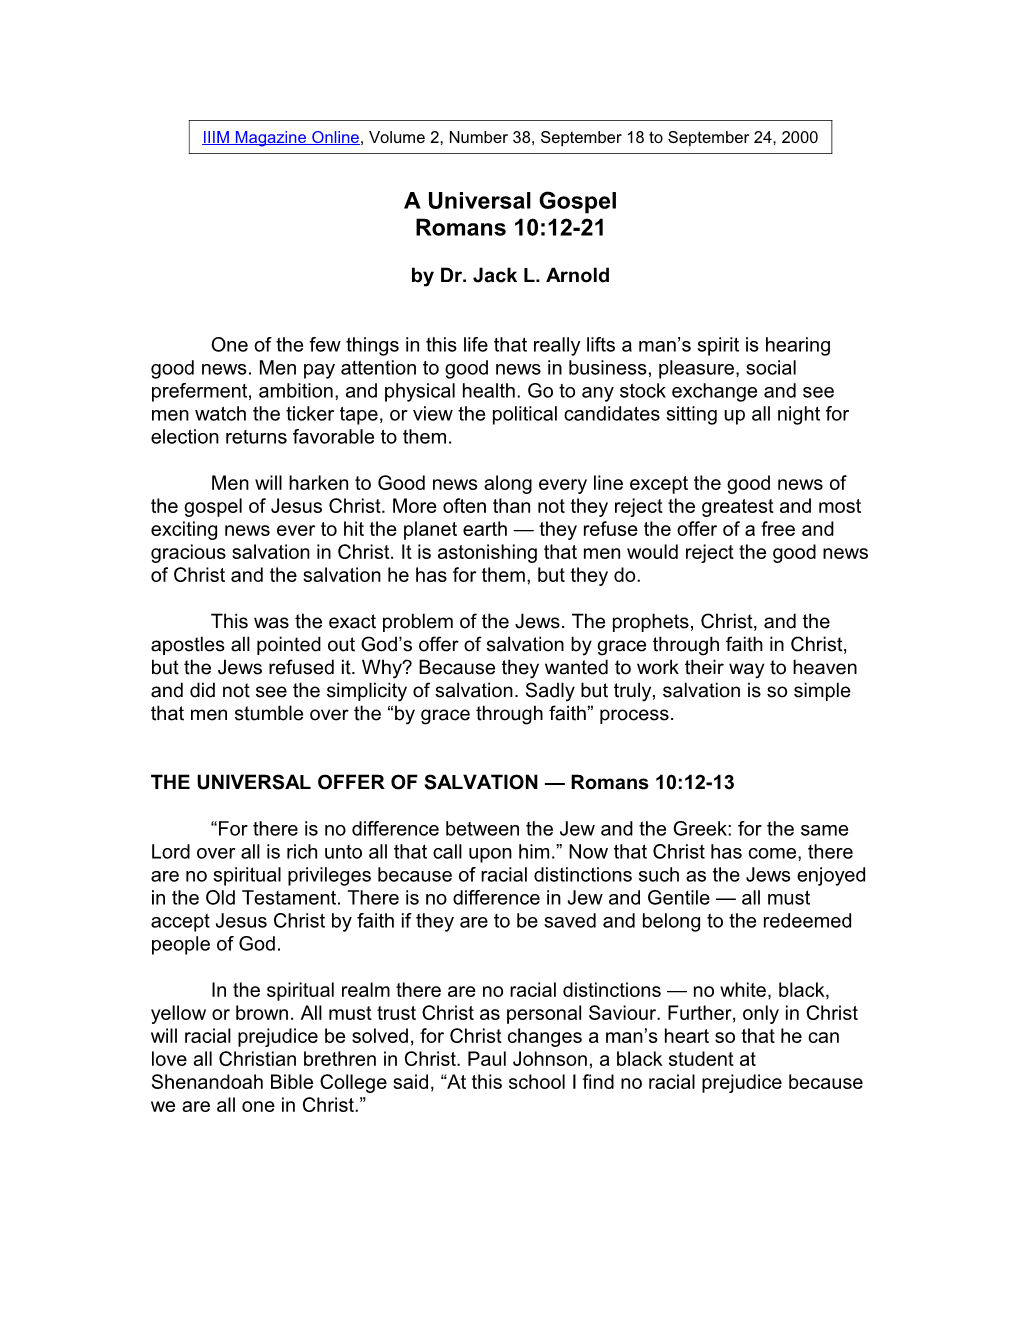 A Universal Gospel Romans 10:12-21 by Dr. Jack L. Arnold